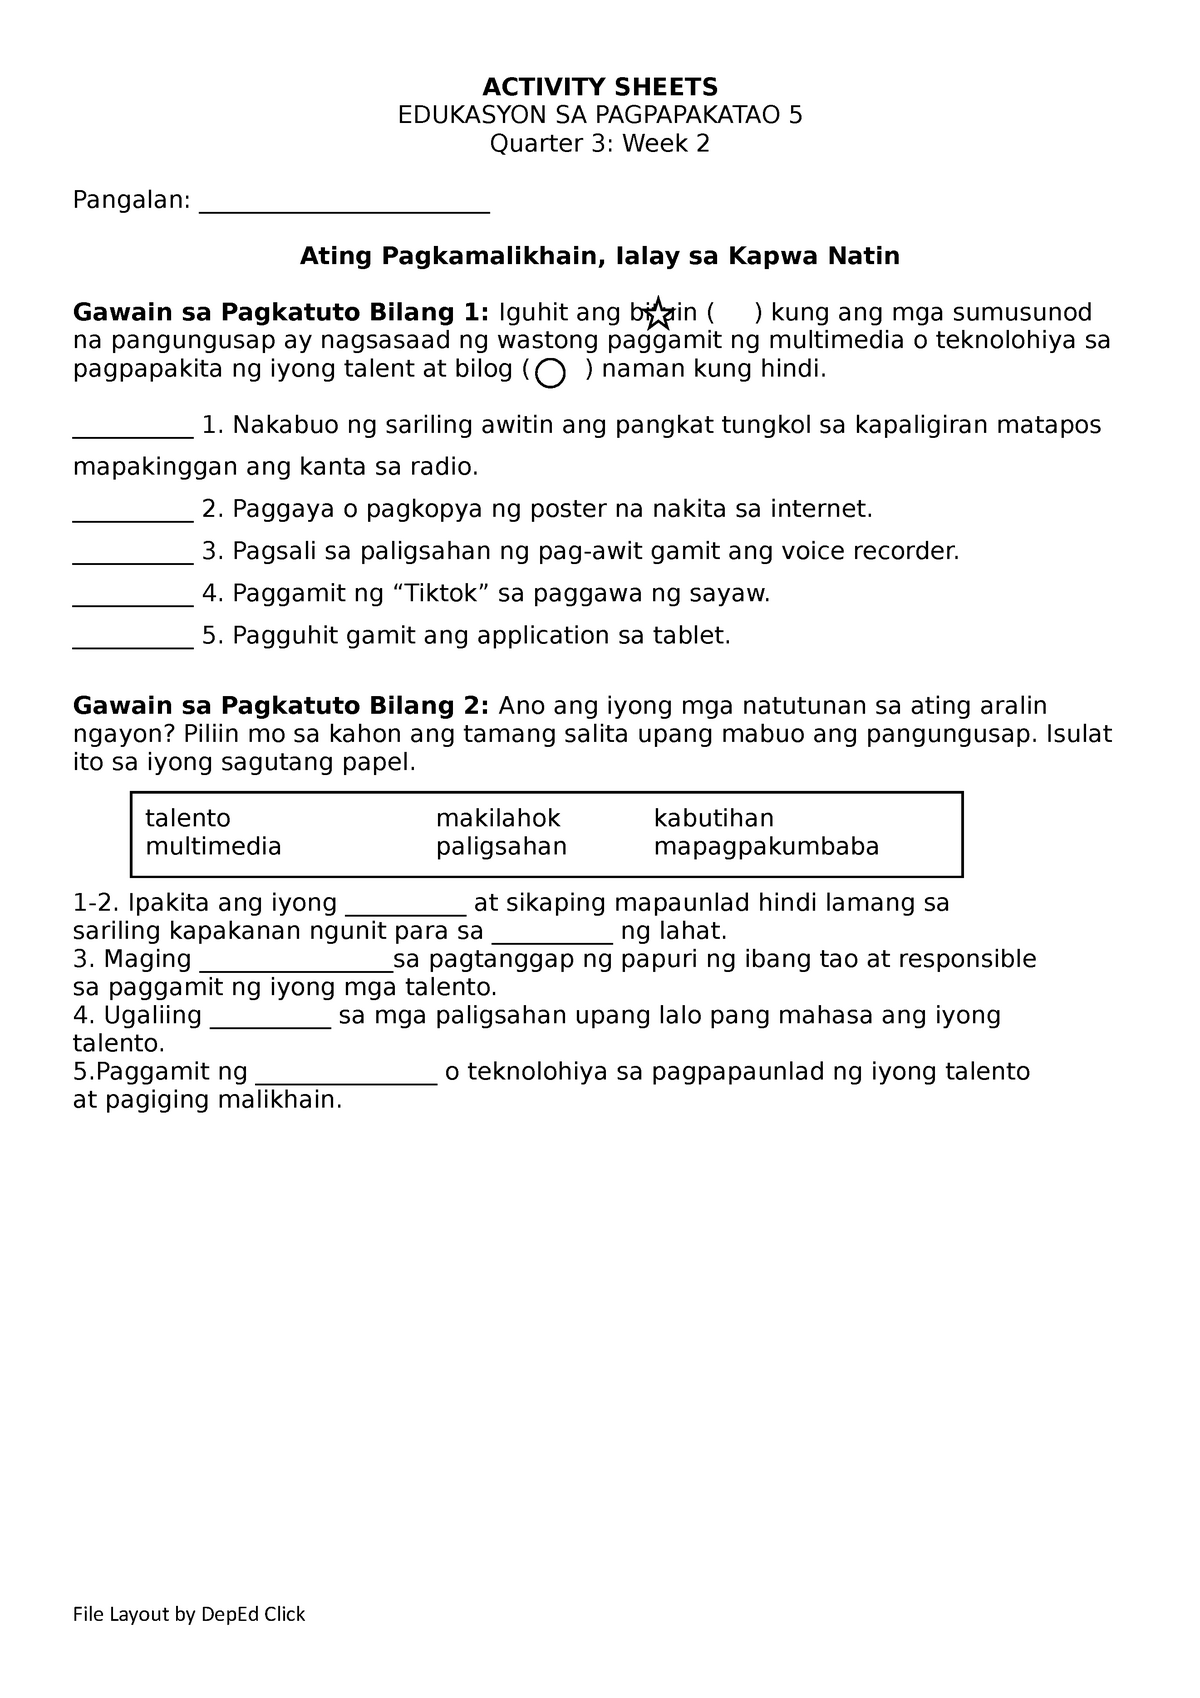 esp-5-activity-sheet-q3-w2-activity-sheets-edukasyon-sa-pagpapakatao